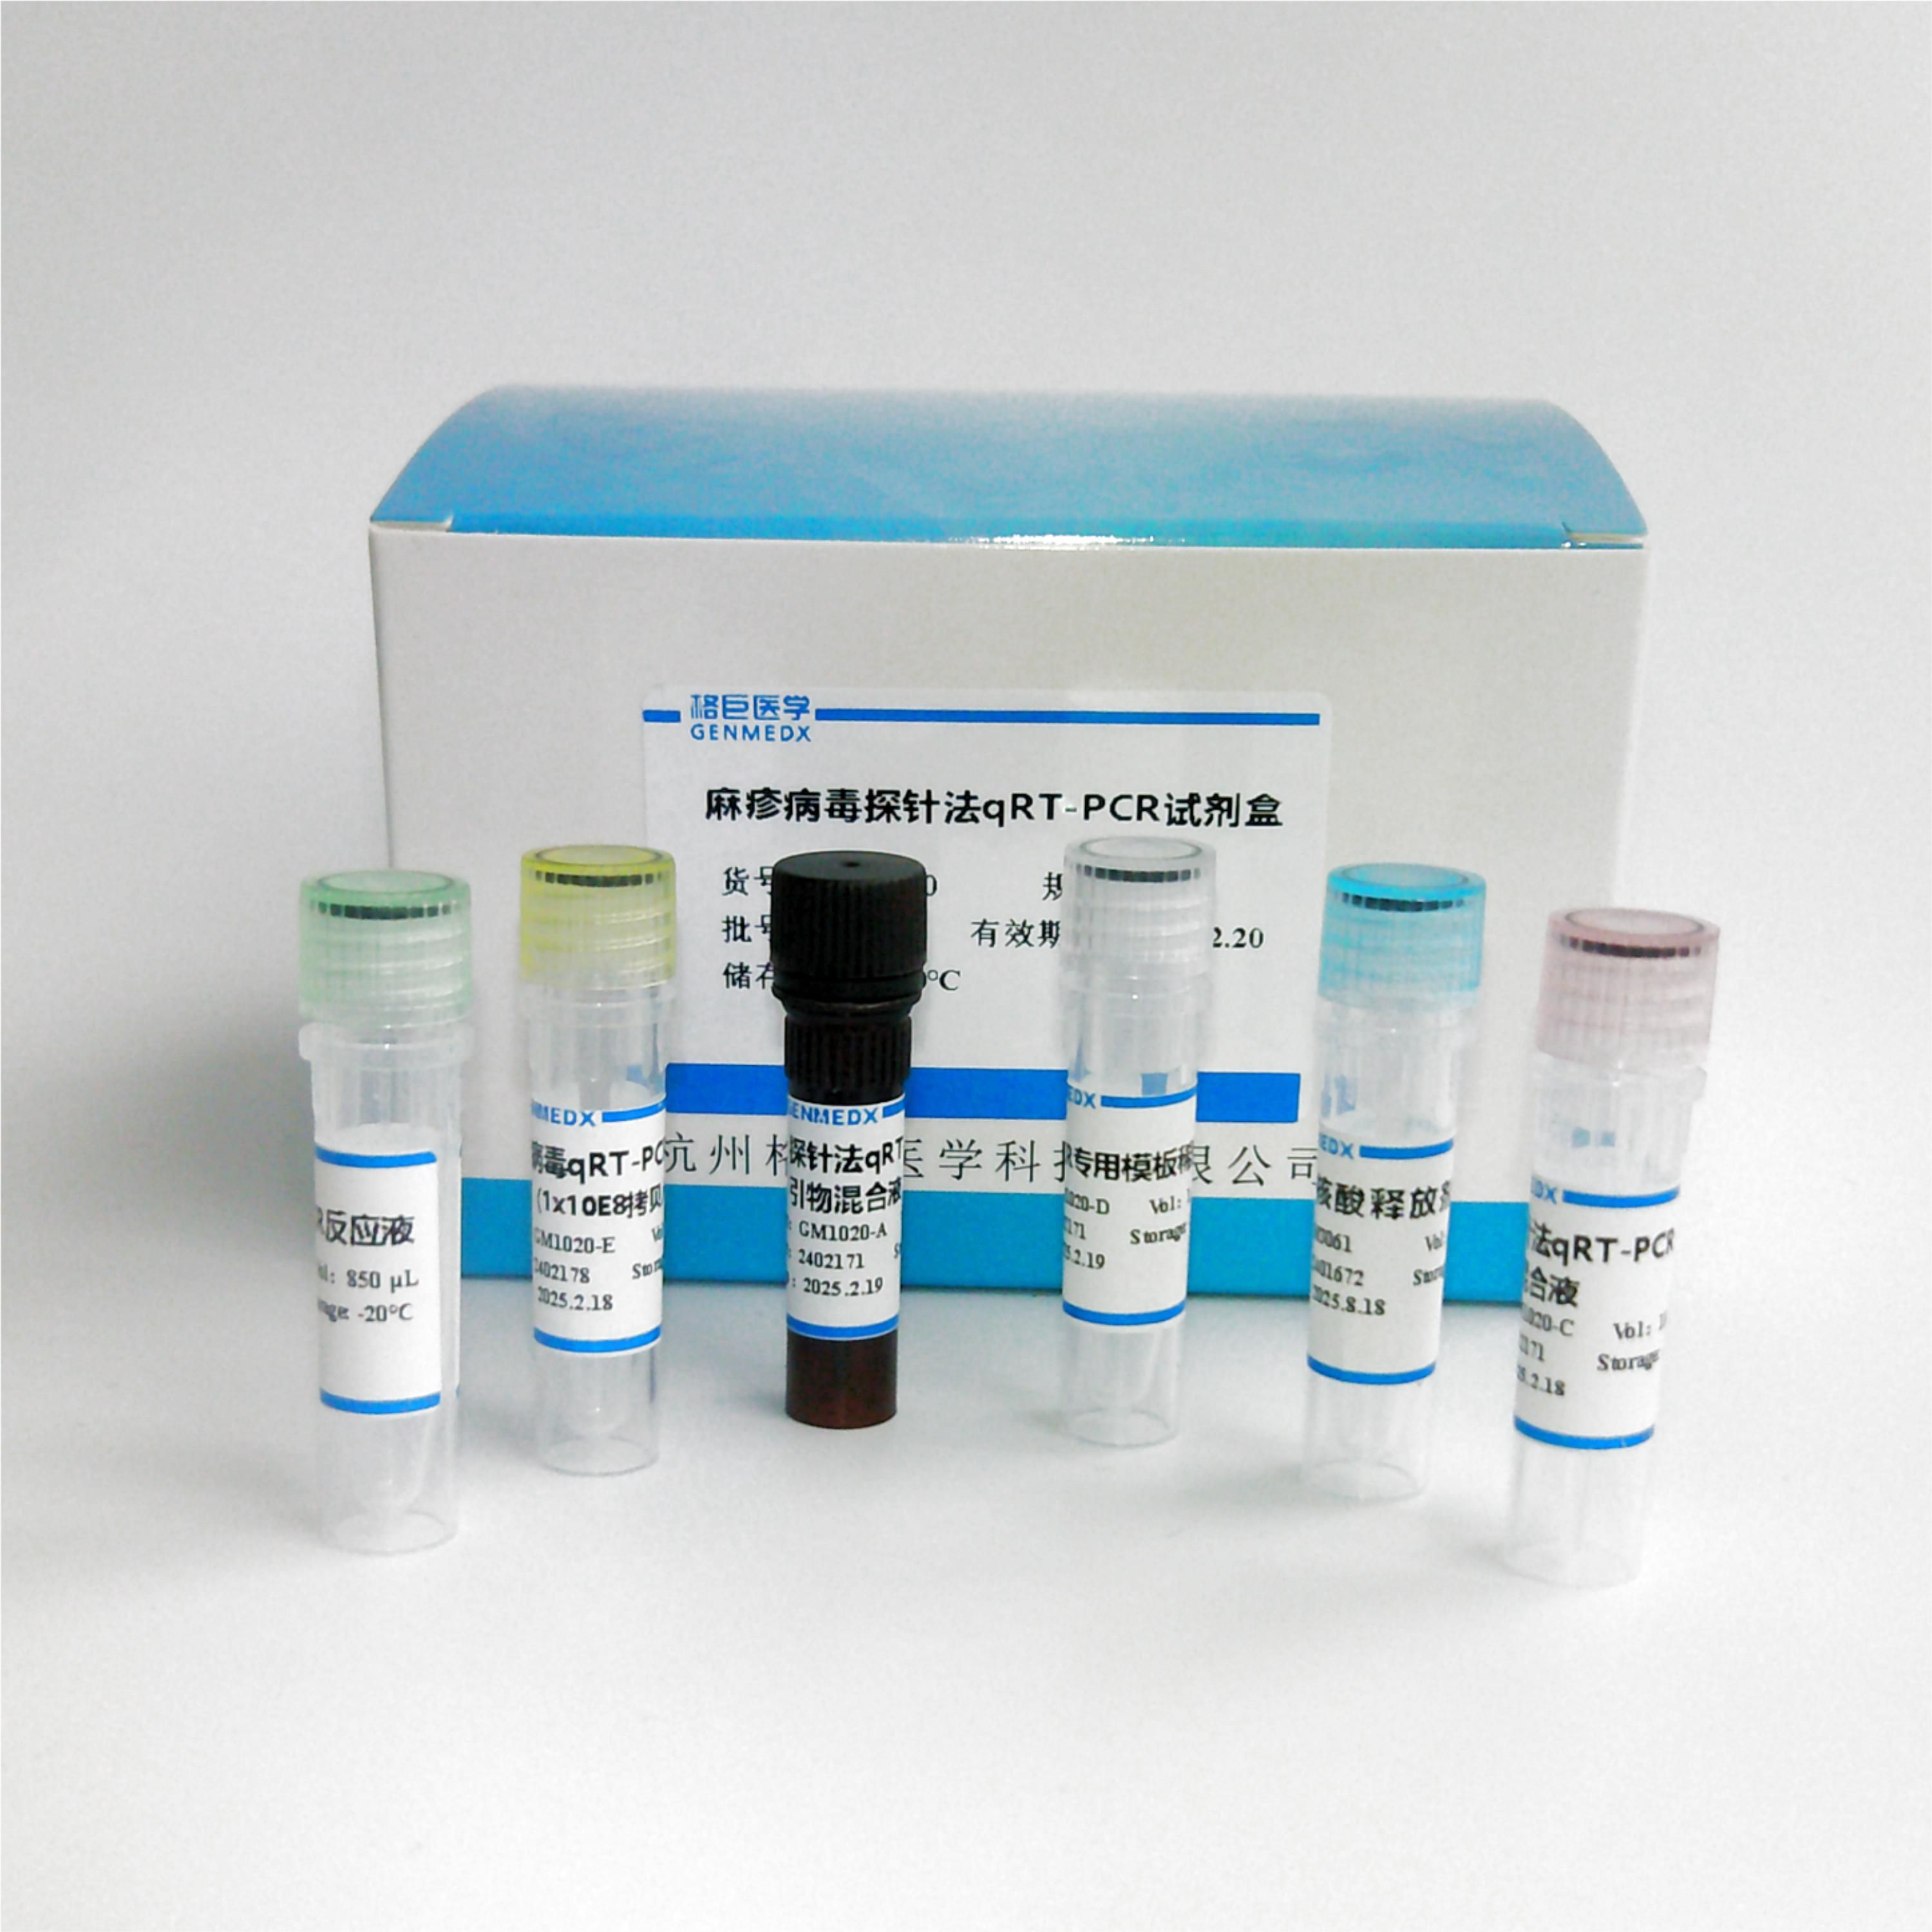 札如病毒探针法荧光定量RT-PCR试剂盒